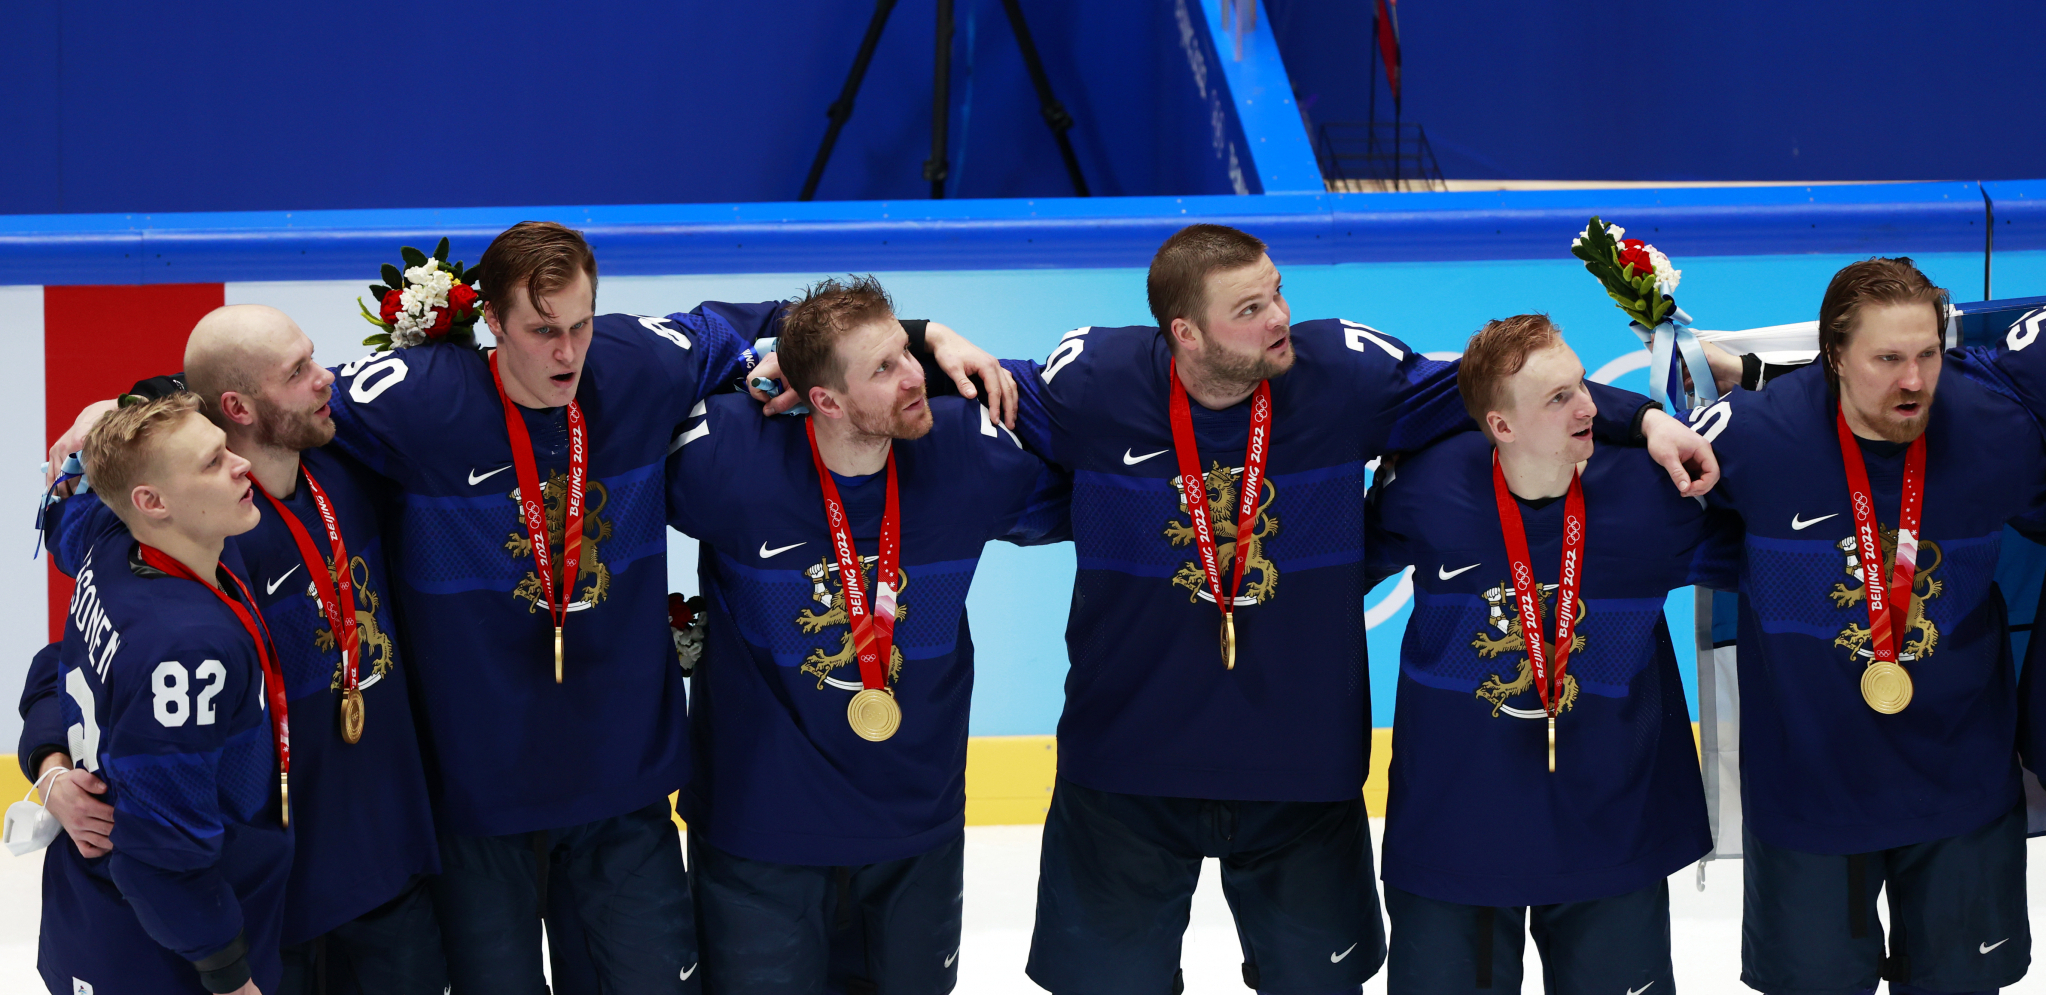 ISTORIJA JE ISPISANA! Hokejaši Finske savladali Rusiju i osvojili zlatnu medalju!